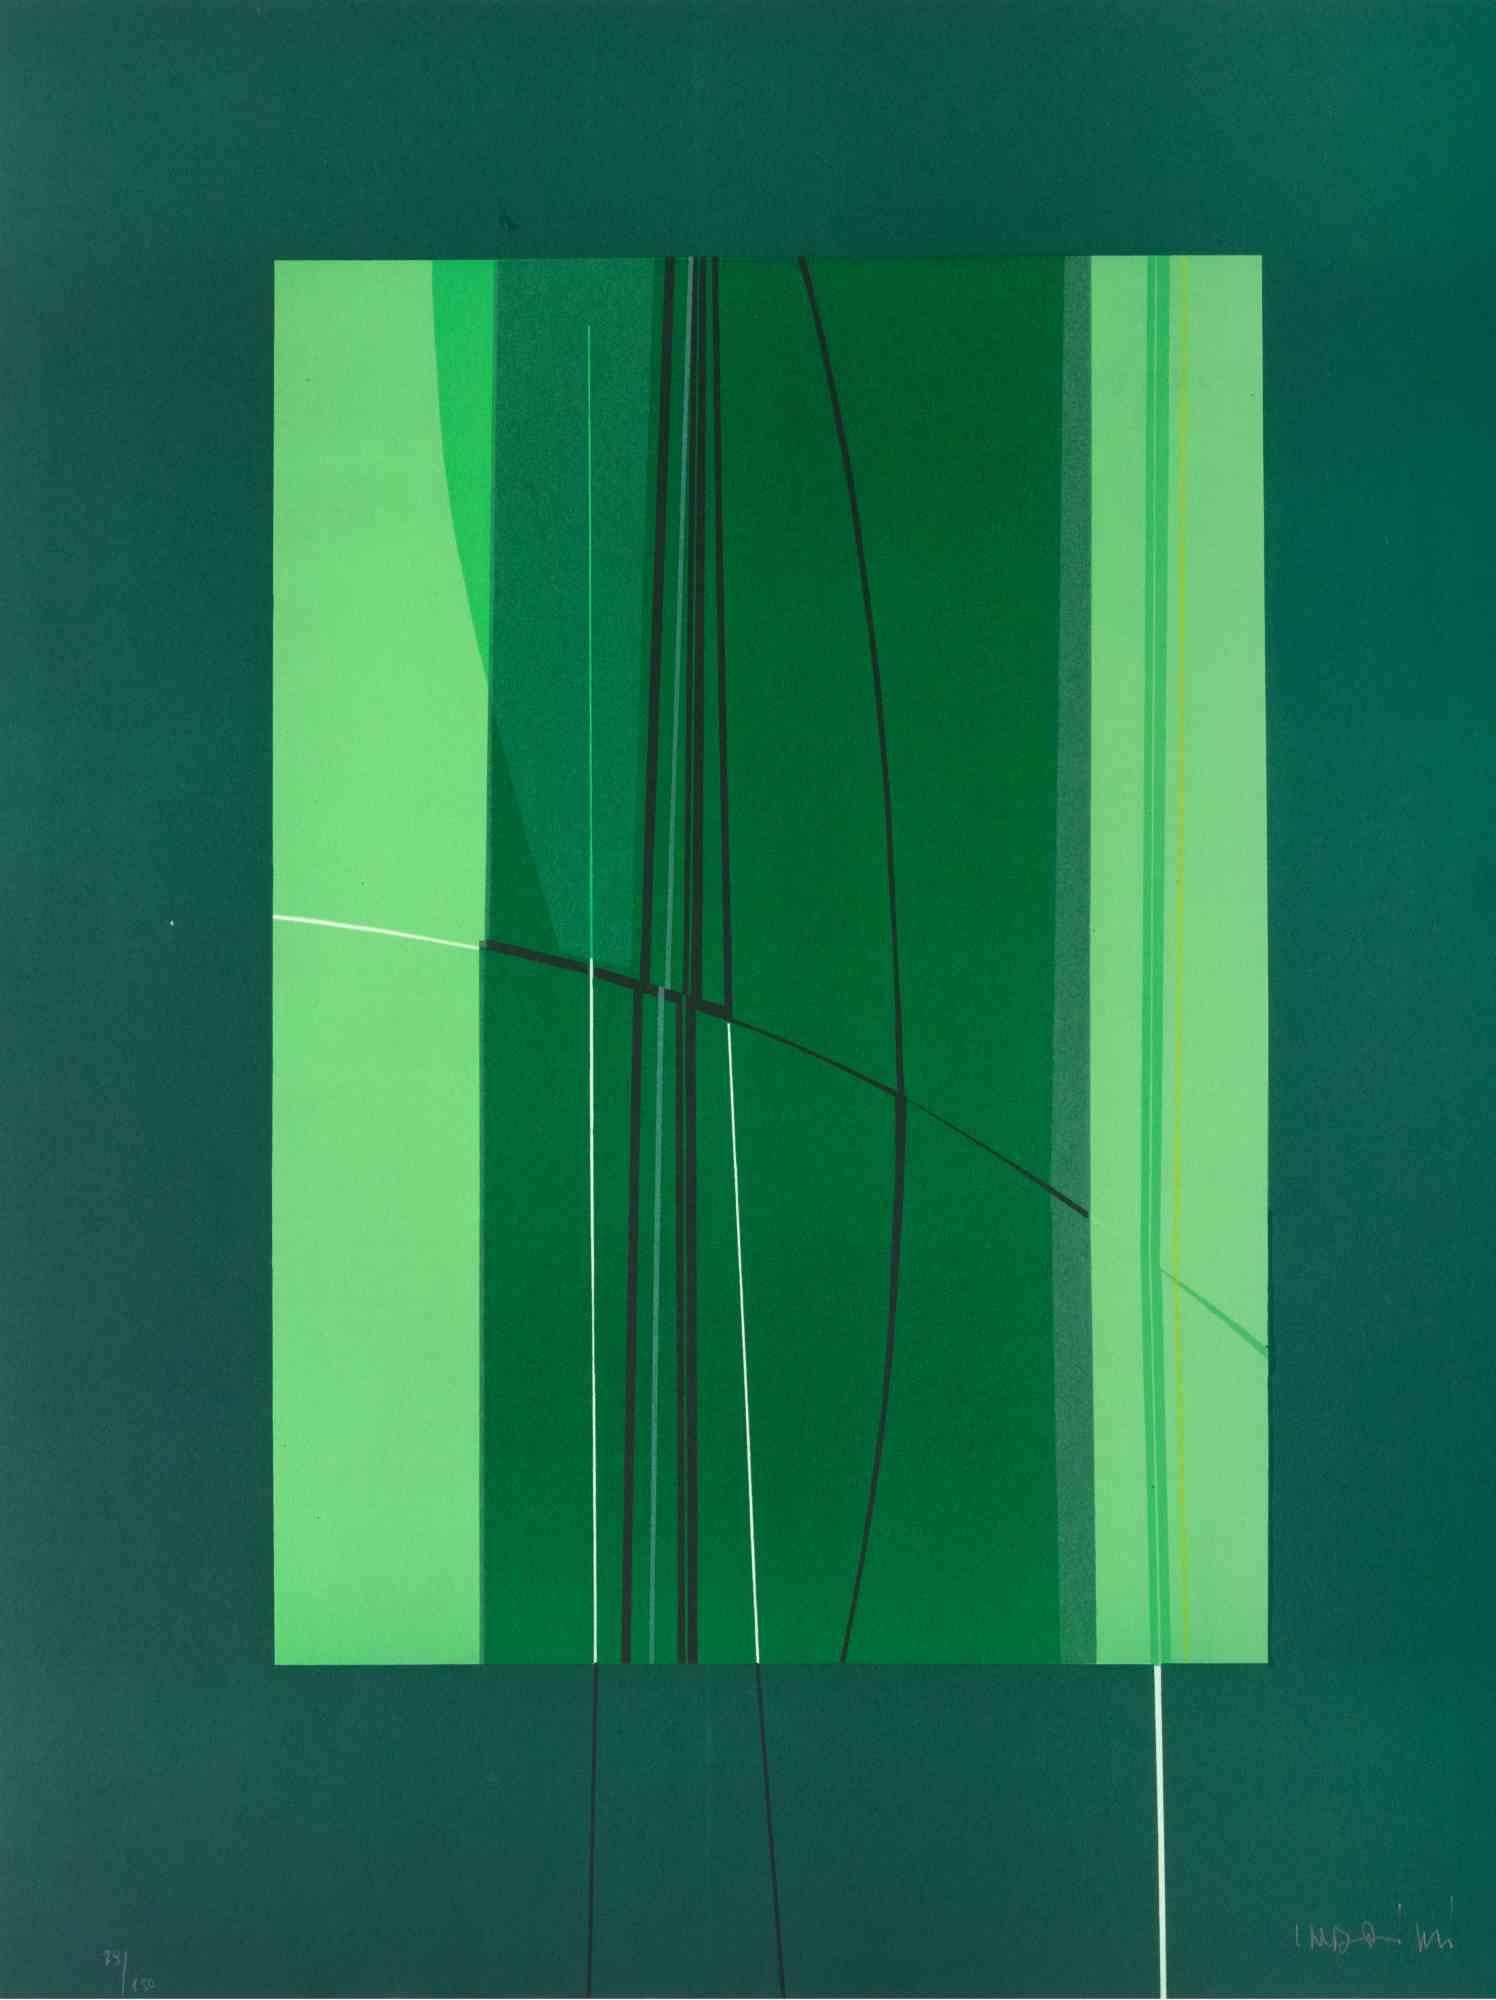 Green est une œuvre d'art contemporain réalisée par Lorenzo Indrimi dans les années 1970.

Lithographie en couleurs mélangées.

Signé à la main et daté dans la marge inférieure.

Édition de 79/150.

